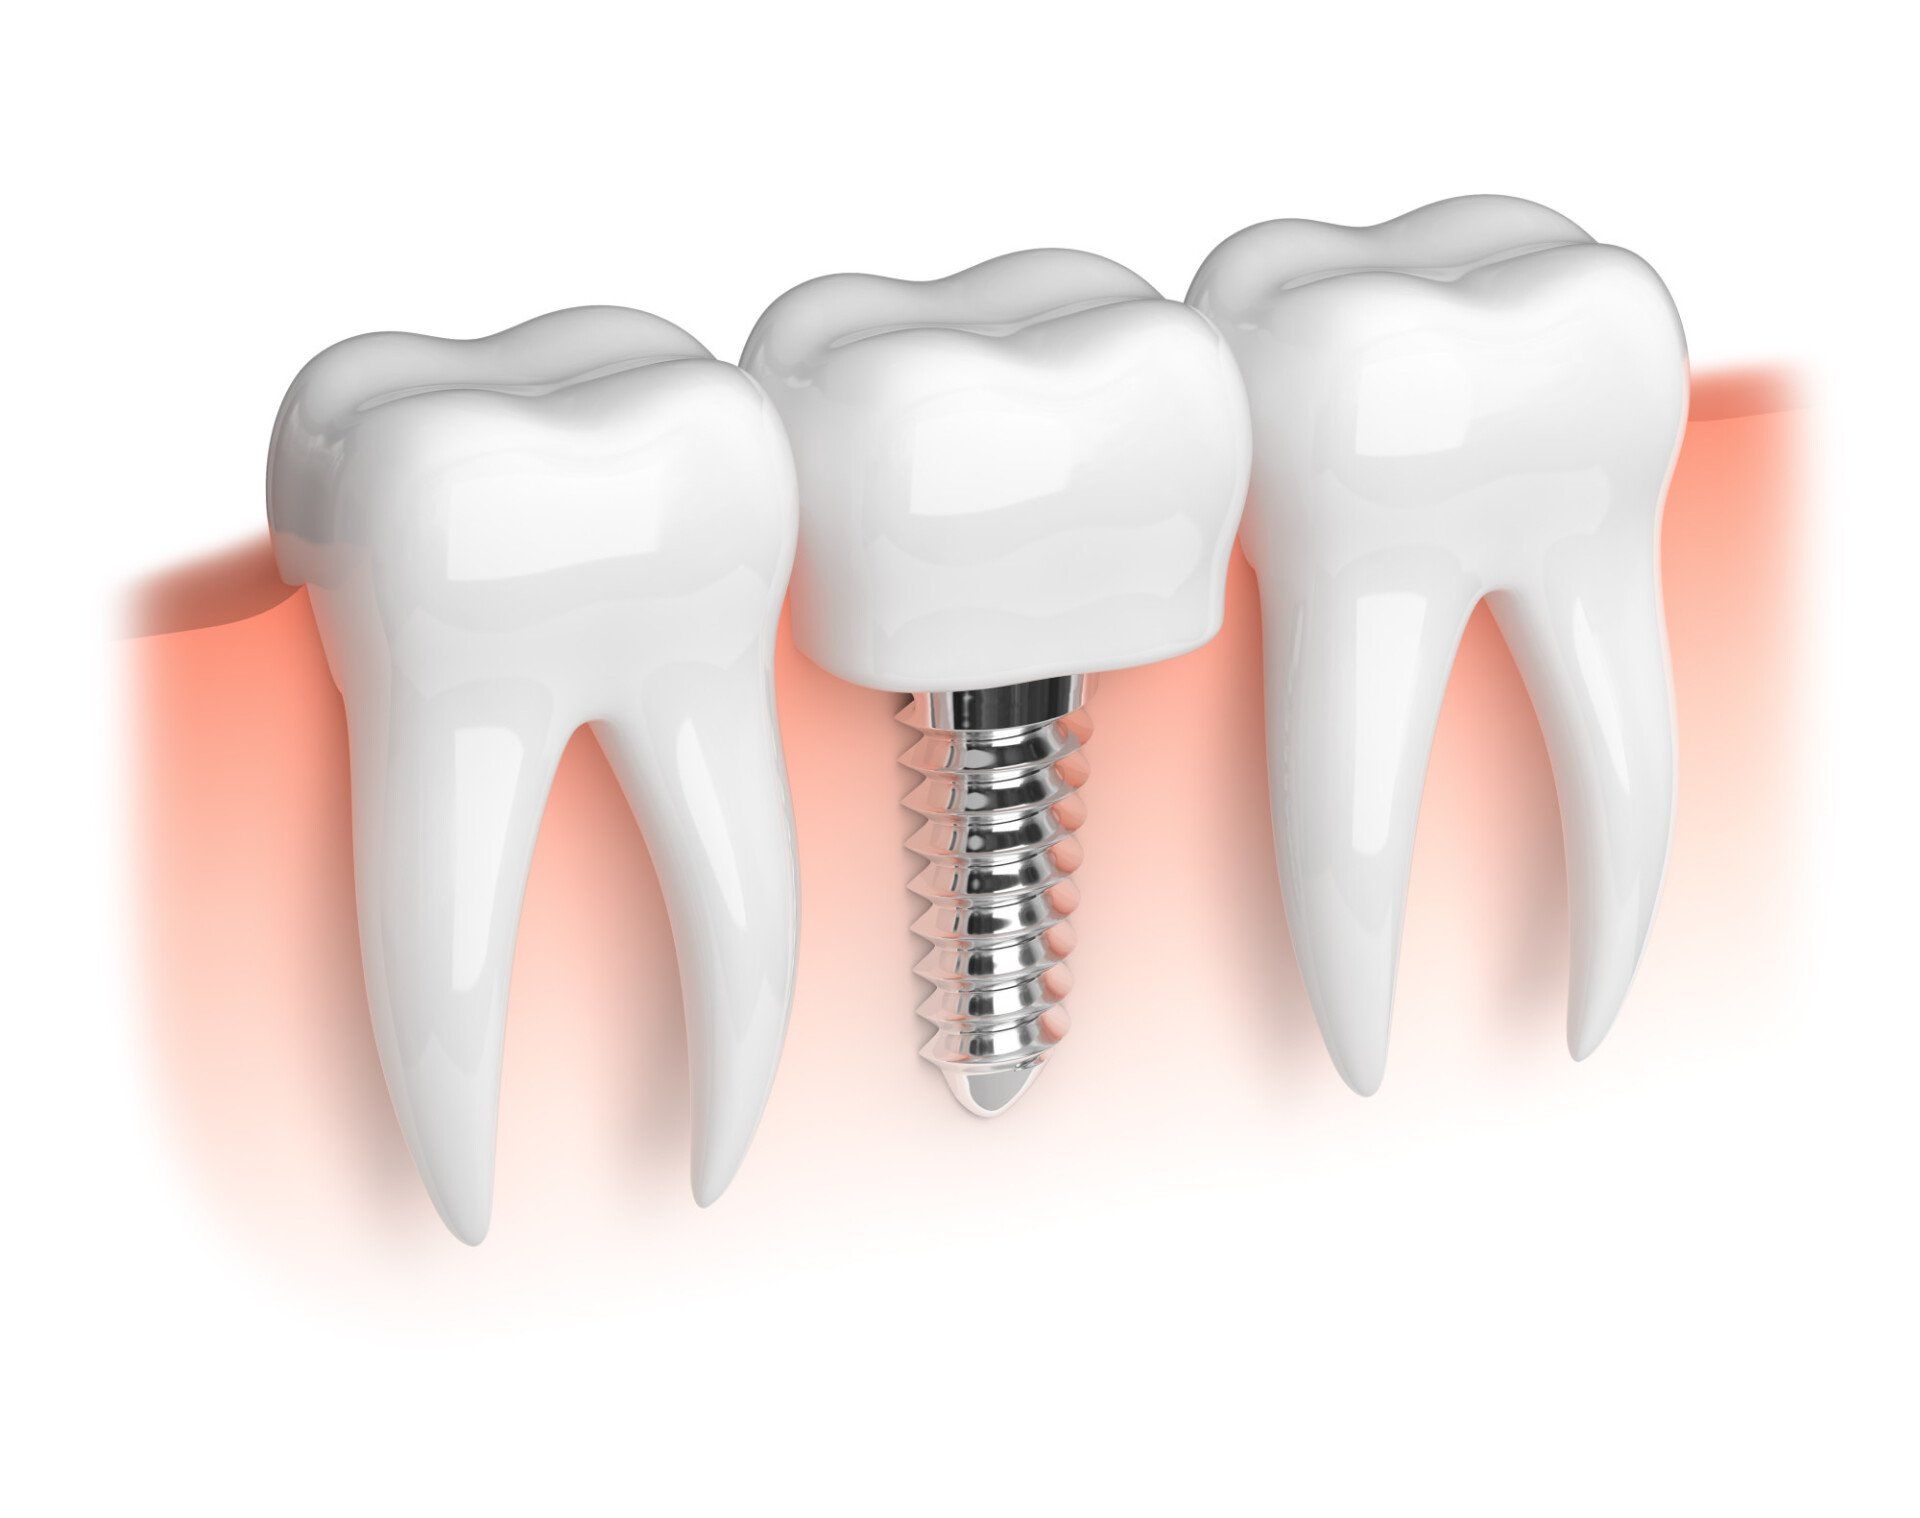 dental implants; 3D imaging technology; Dr. Garland Davis; Garland K. Davis, DDS; Family Dentistry; Laurel, MD dentist; Laurel, MD 20707